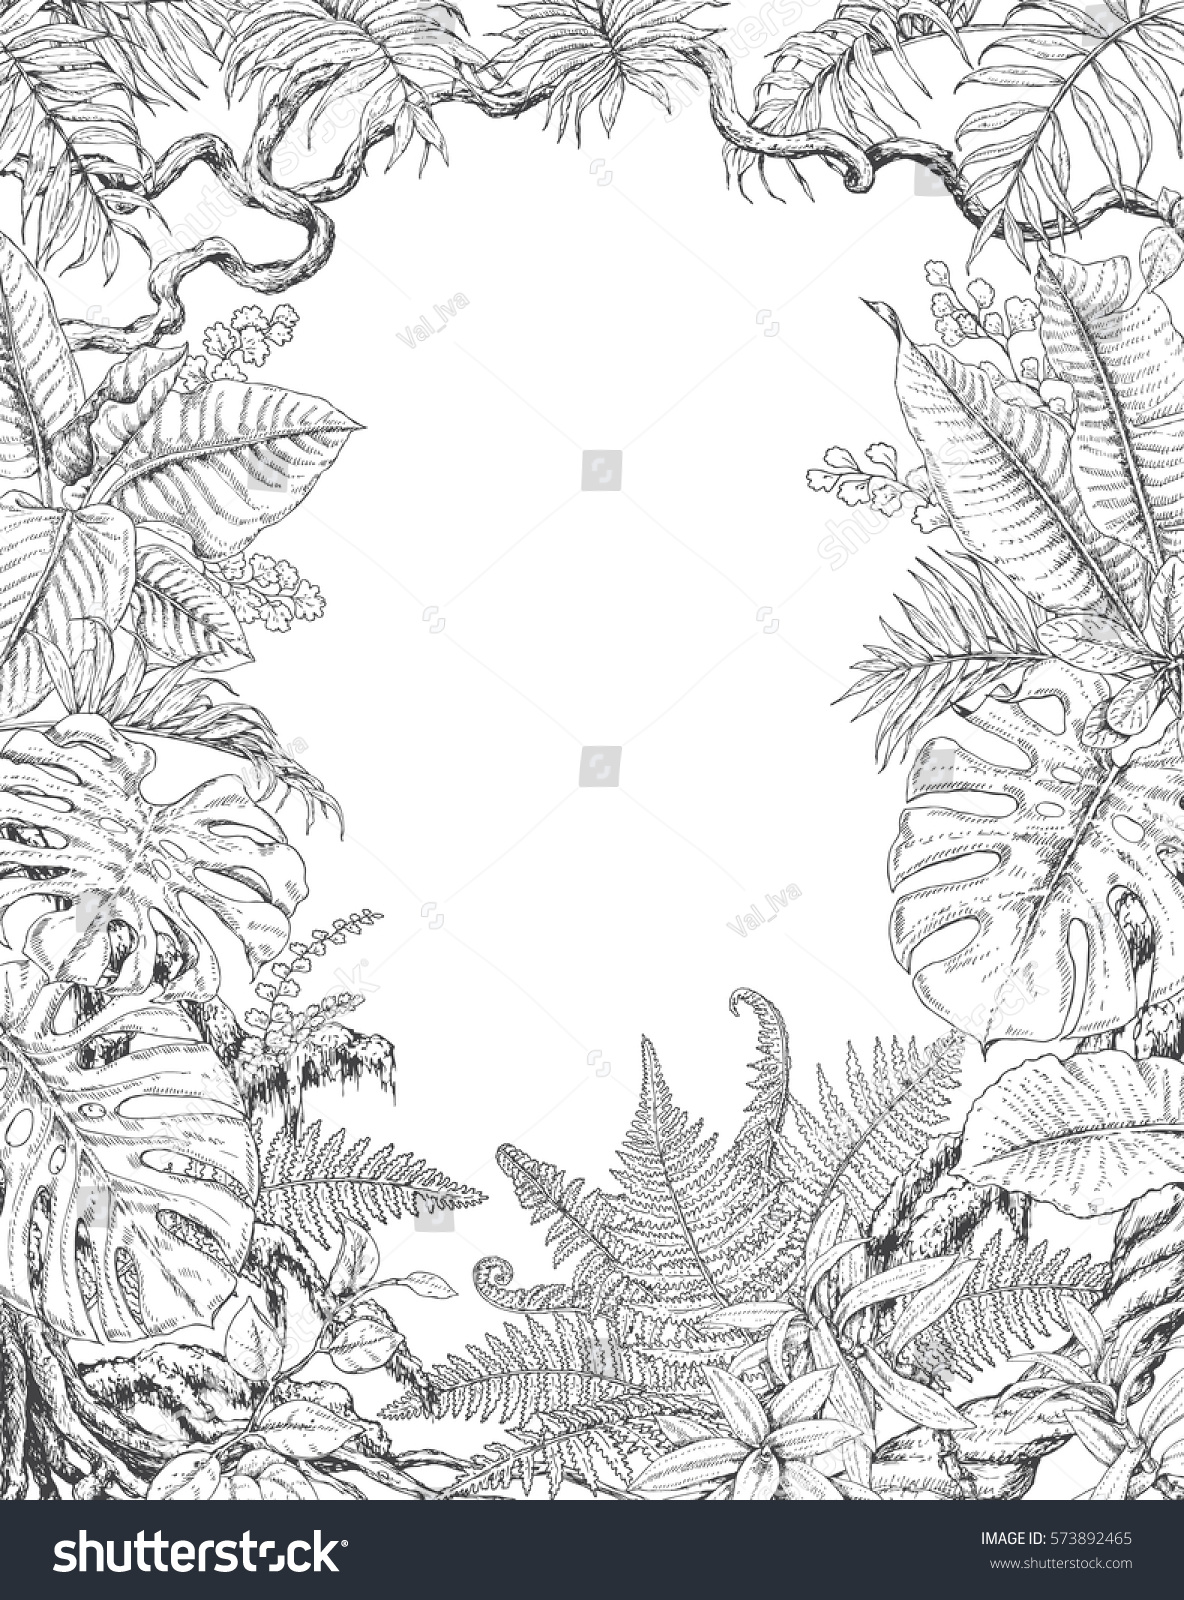 熱帯植物の手描きの枝と葉 白黒の長方形の垂直l花柄のフレーム モンステラ フィクス シダ リアナ ヤシの葉のスケッチ 成人向けの白黒イラストのカラーリングページ のベクター画像素材 ロイヤリティフリー